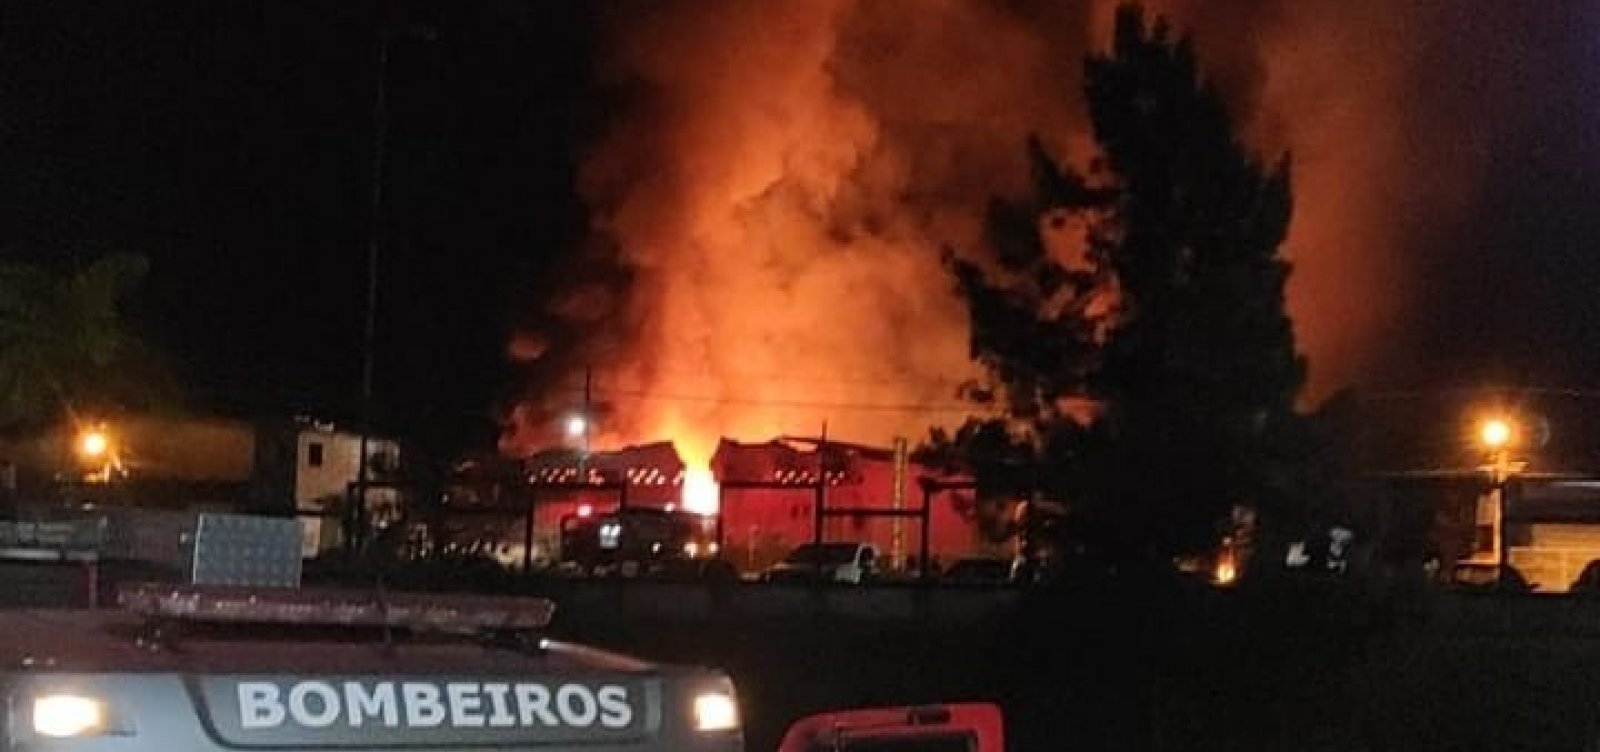 Bombeiros debelam incêndio em fábrica de colchões em Santo Antônio de Jesus 